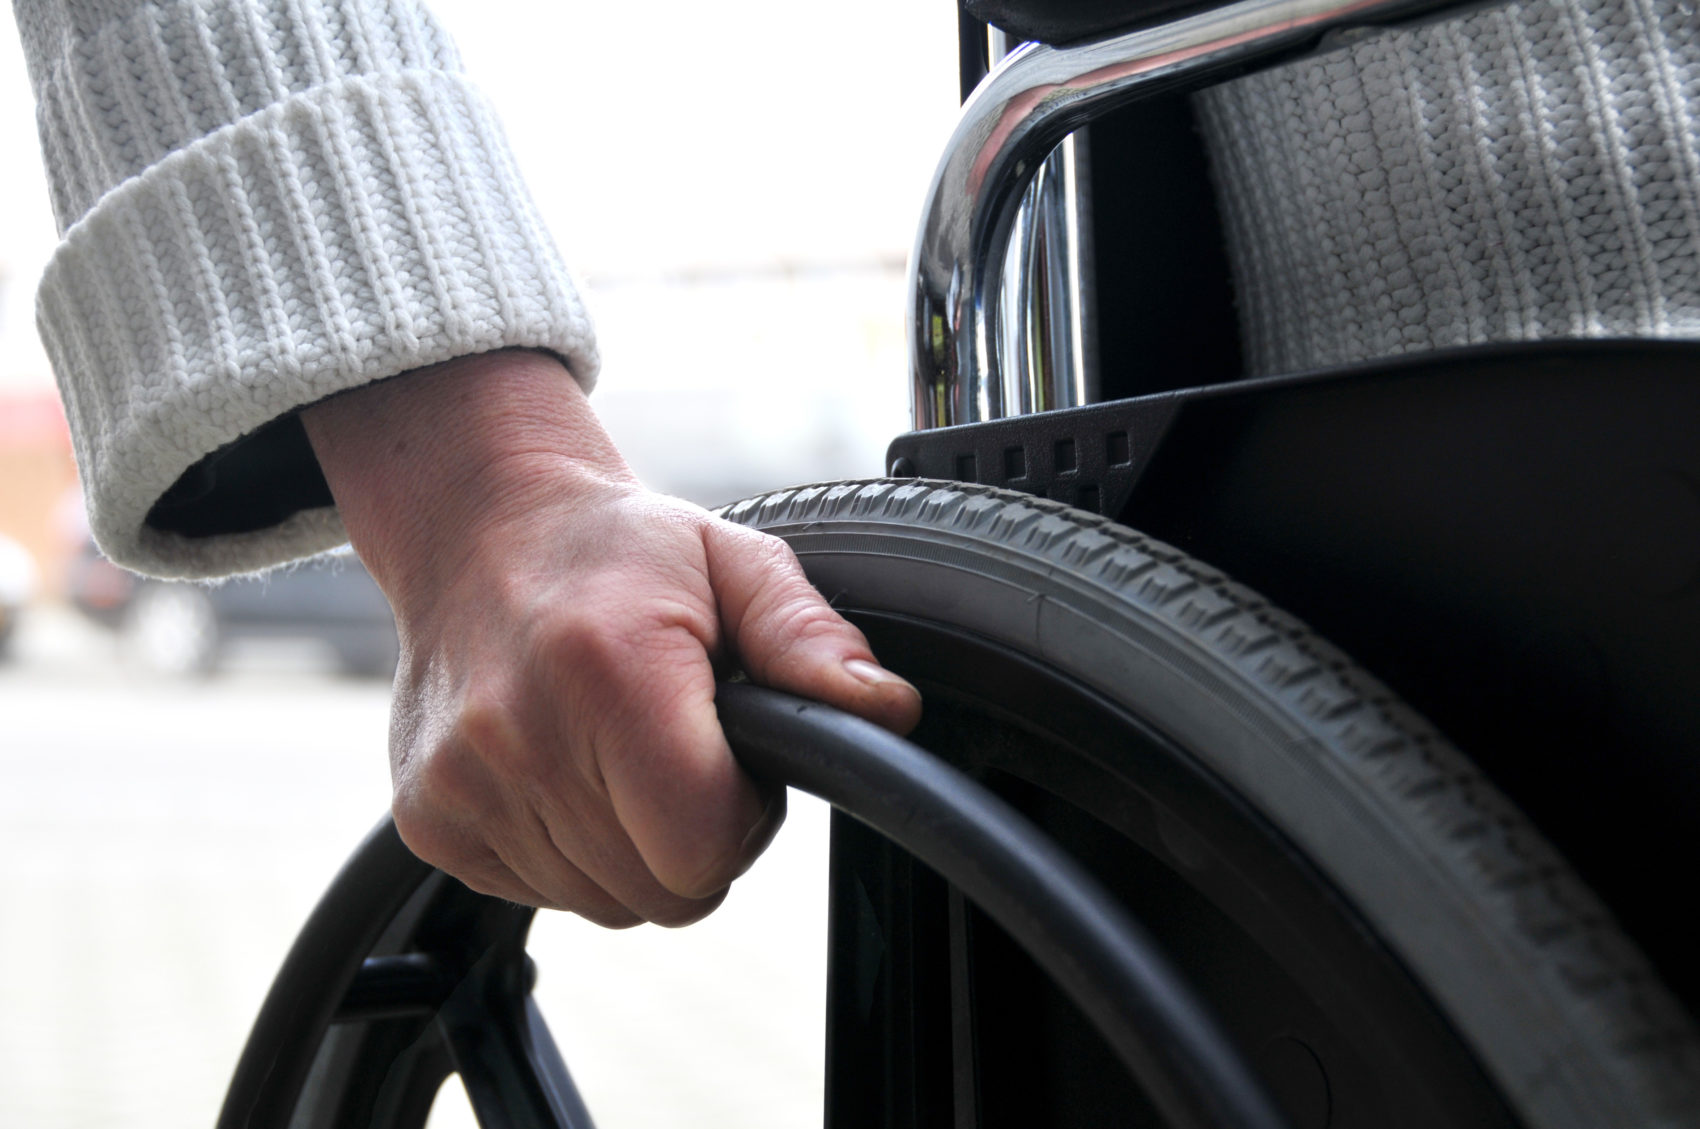 Εκτός Κοινωνικού Οικιακού  Τιμολογίου  άτομα με αναπηρία